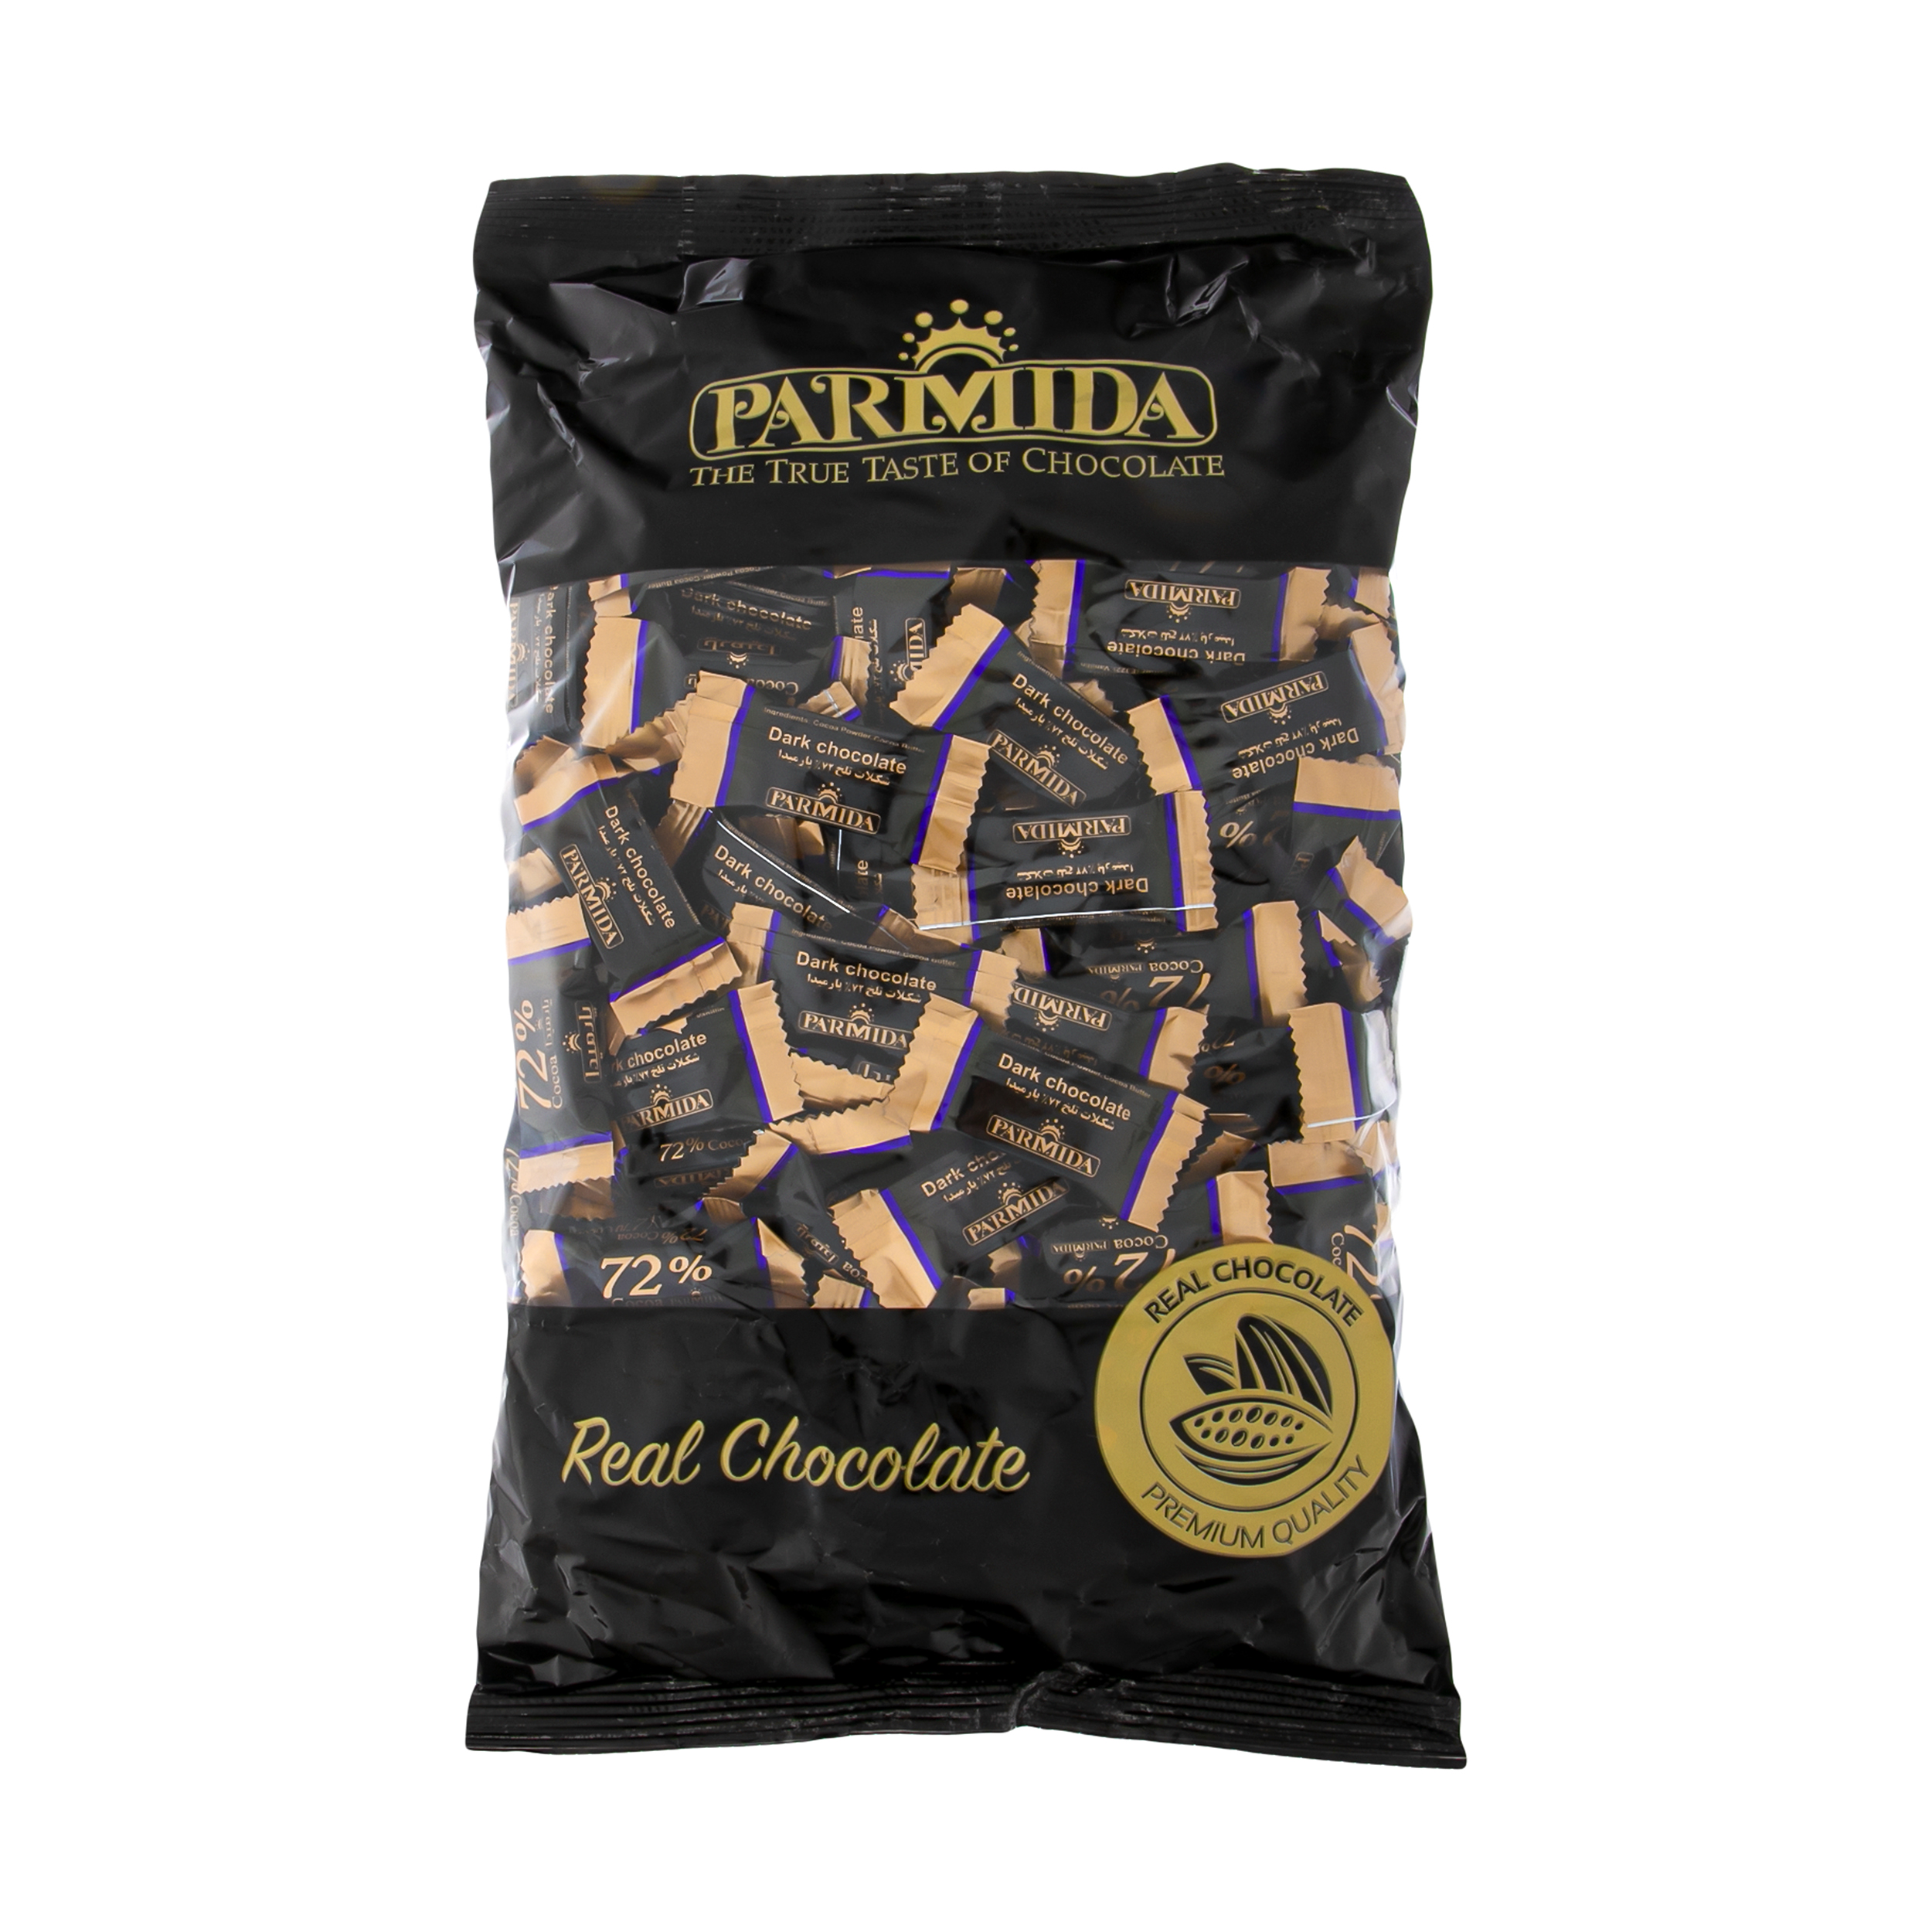 شکلات تلخ 72 درصد پارمیدا - 1 کیلوگرم